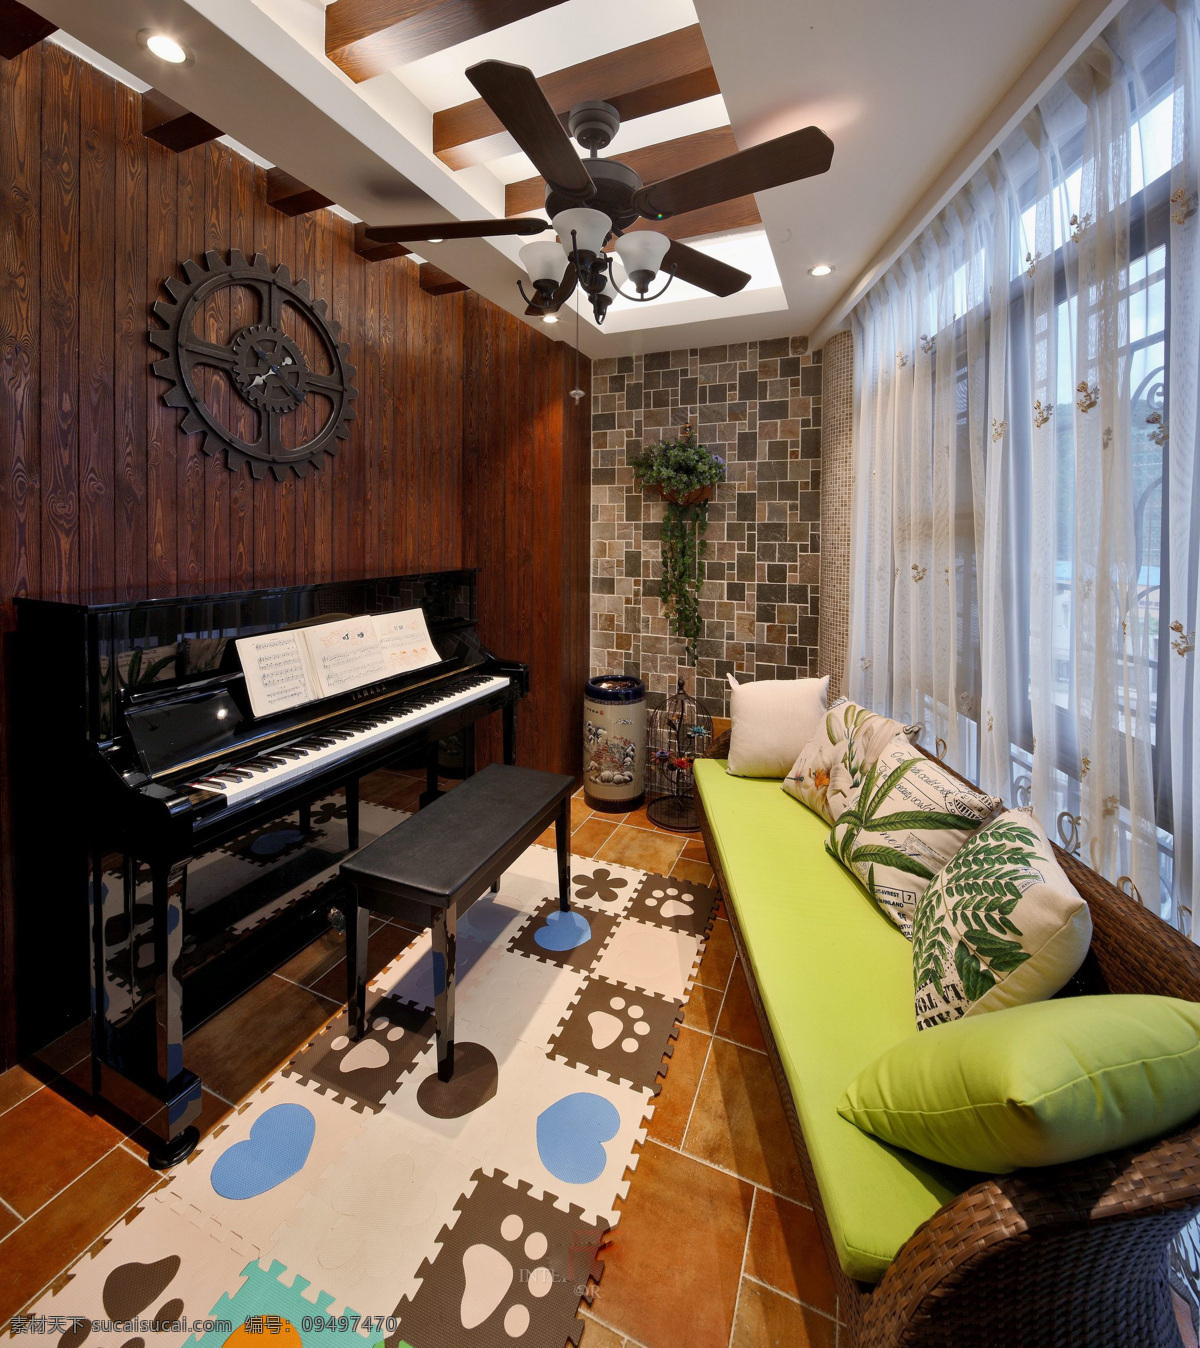 美式 创意 钢琴 室 背景 墙 设计图 家居 家居生活 室内设计 装修 室内 家具 装修设计 环境设计 钢琴室 背景墙